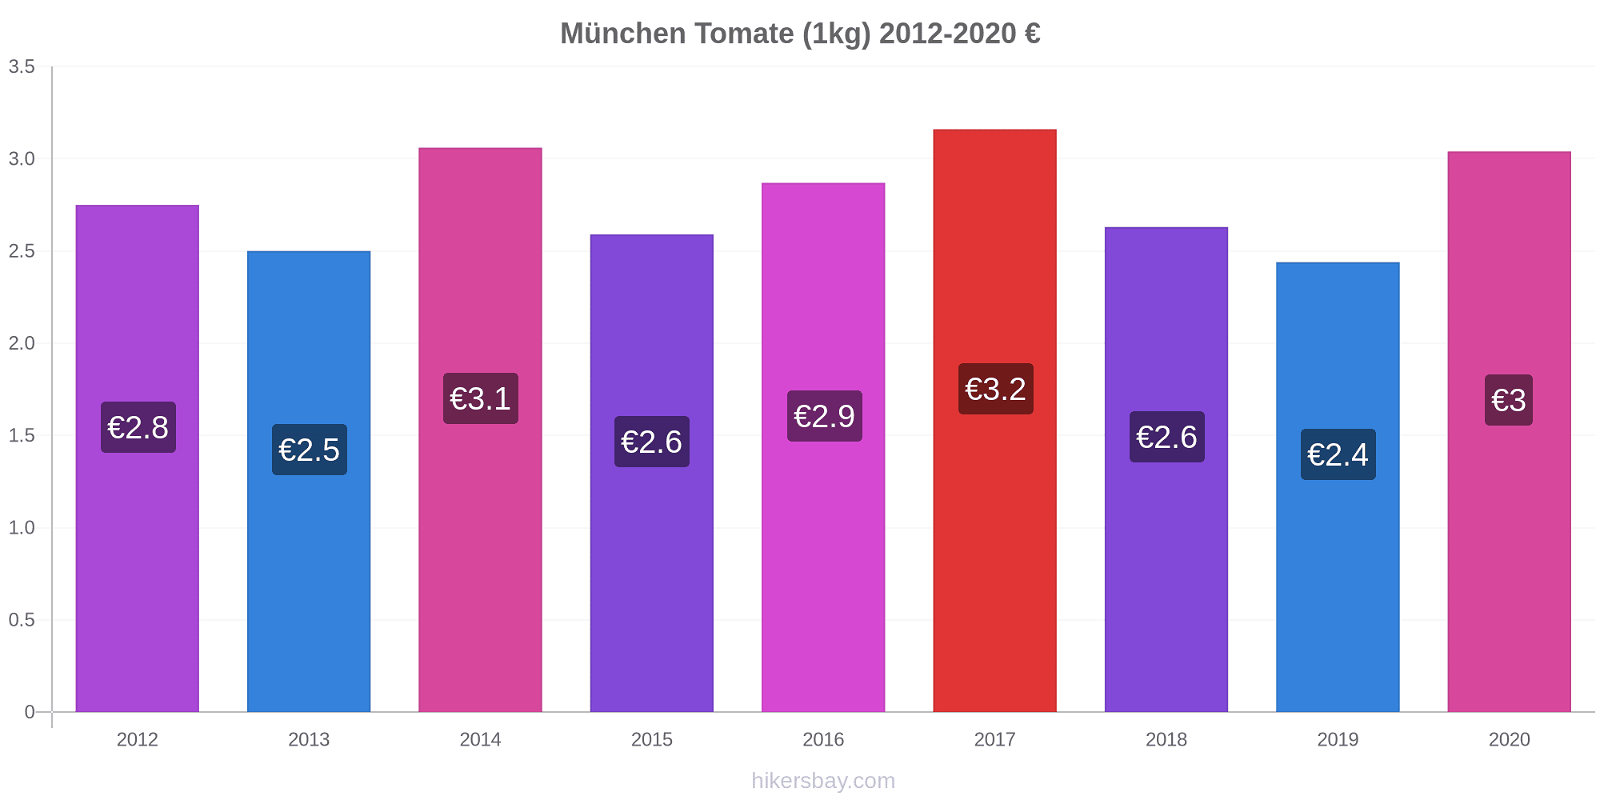 München modificări de preț Tomate (1kg) hikersbay.com